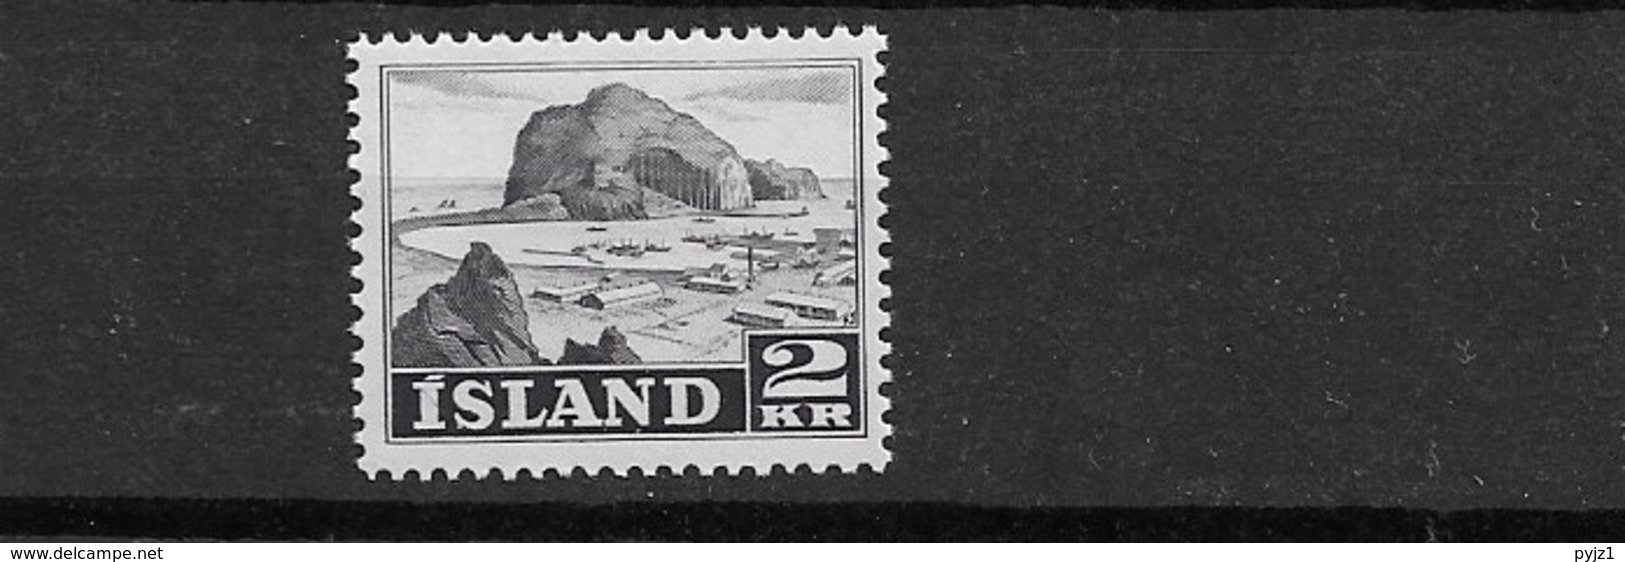 1950 MNH Iceland, Island, Mi 269 - Neufs